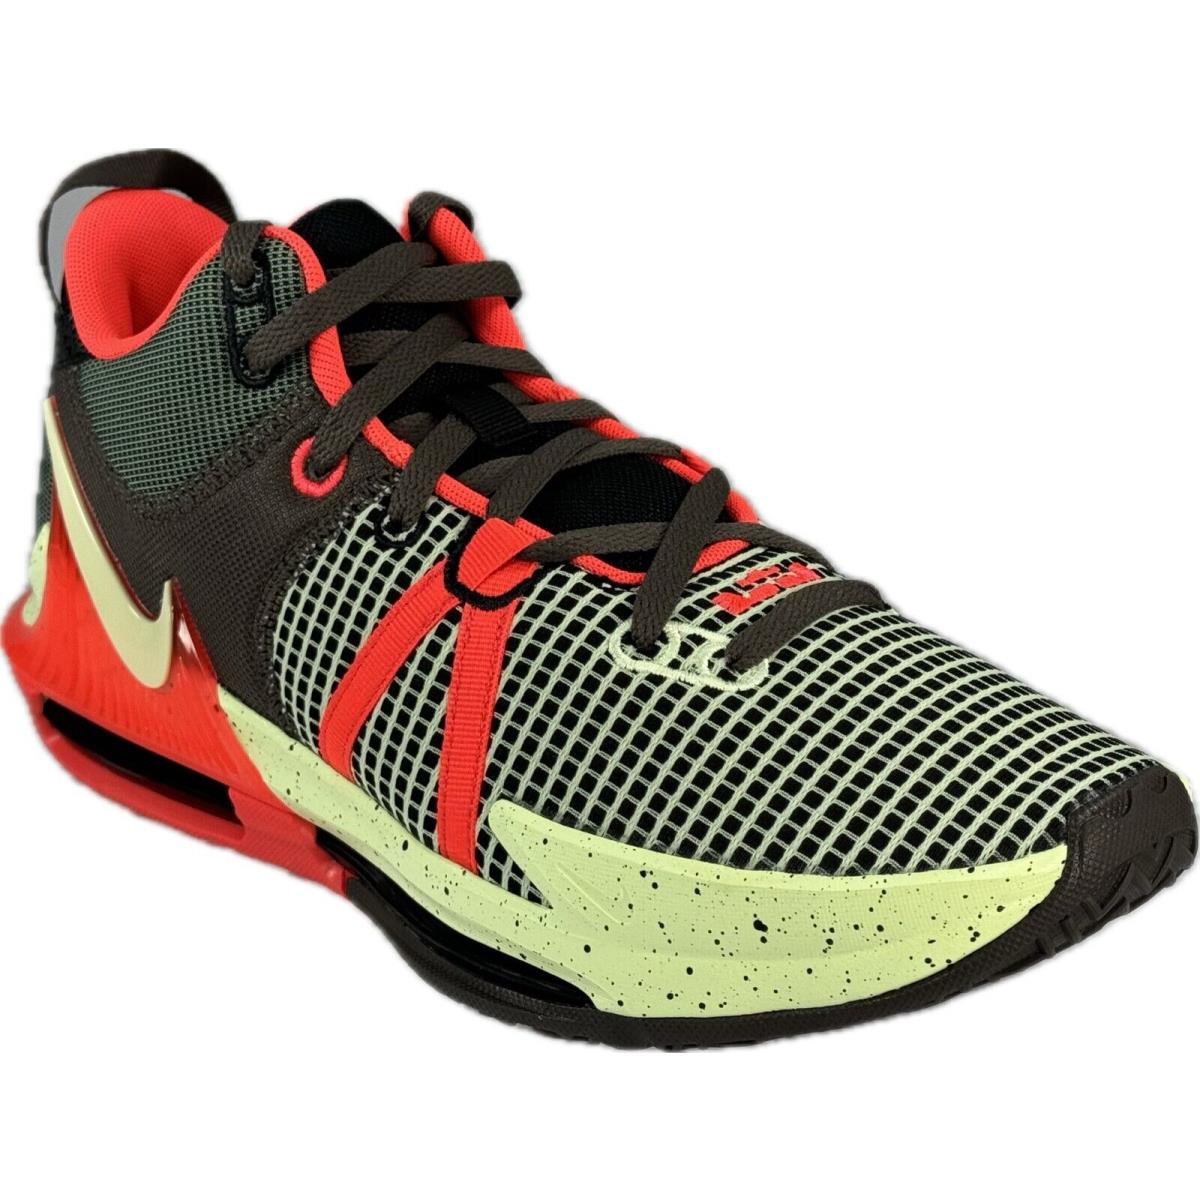 Nike Men`s Lebron Witness 7 Black/barely Volt Basketball Shoes DM1123-001 - Black/Barely Volt